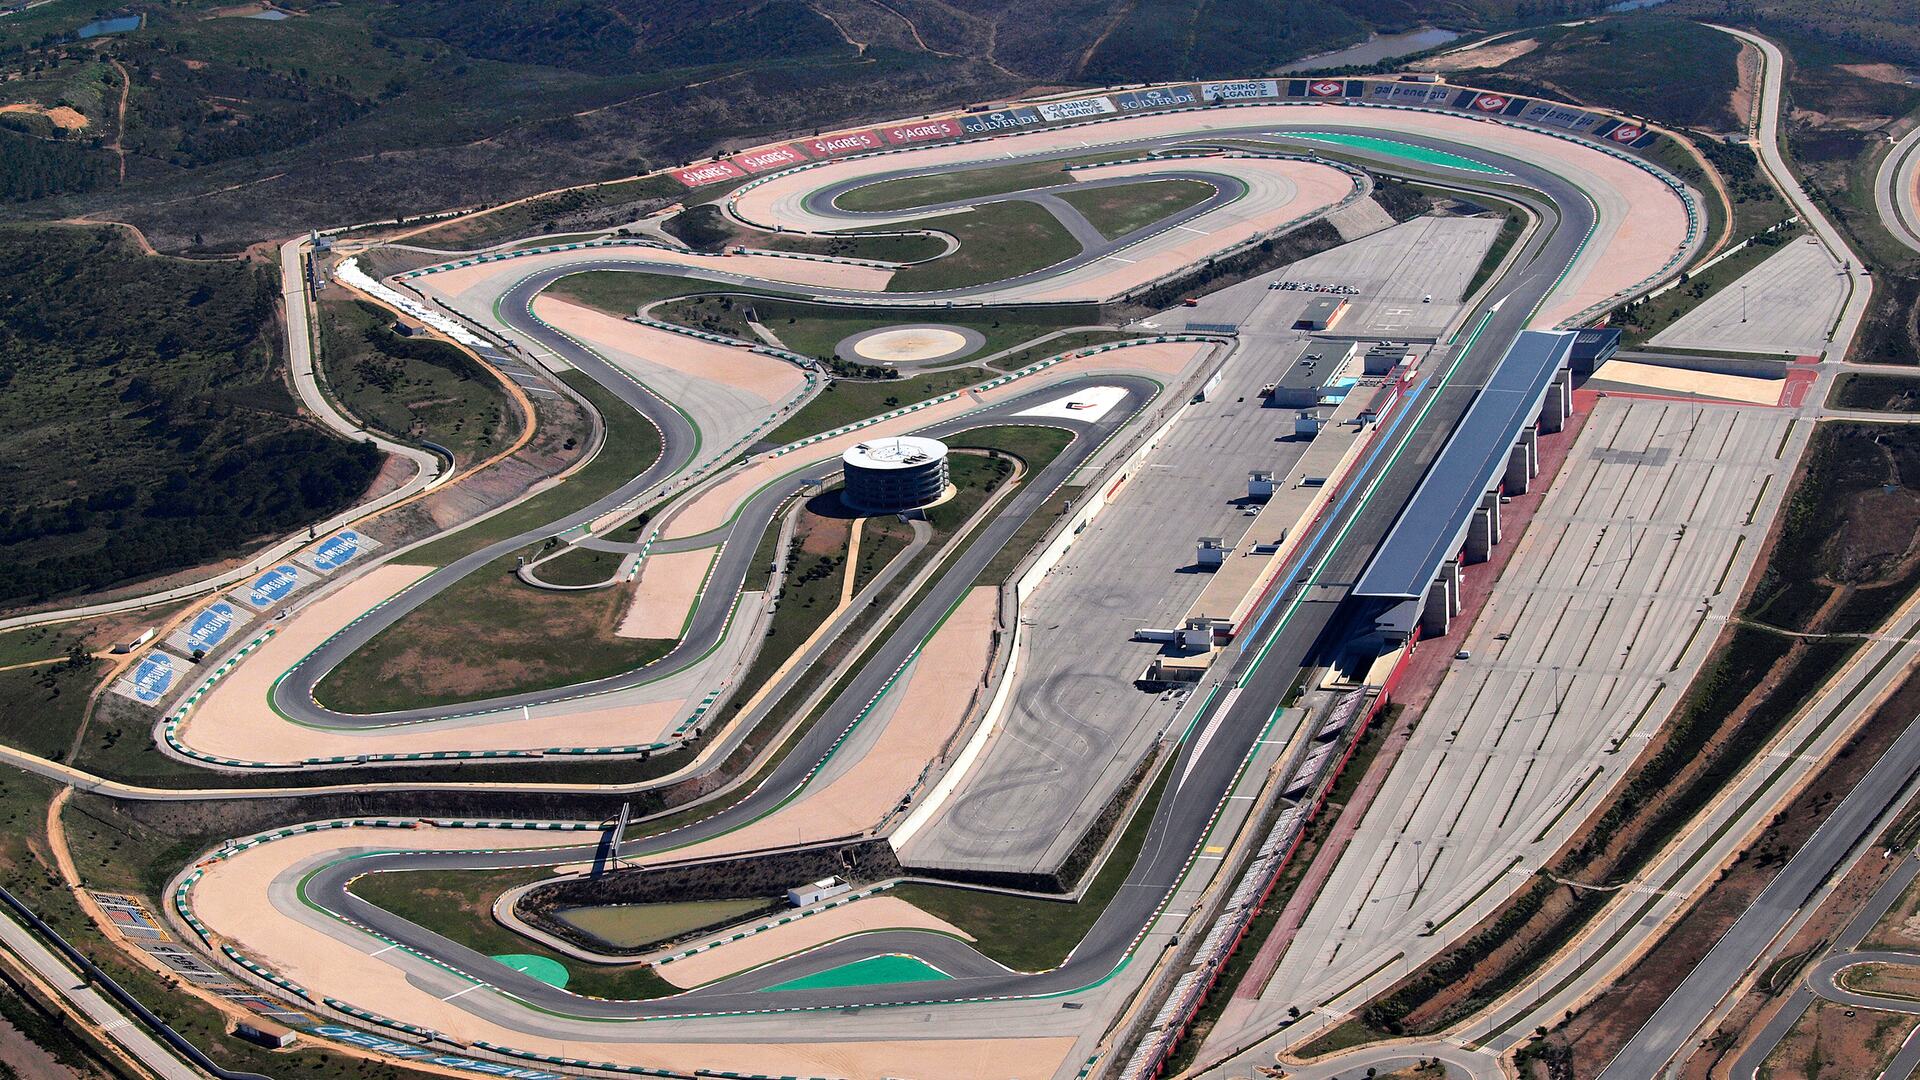 Autódromo Internacional do Algarve: Aerial View.